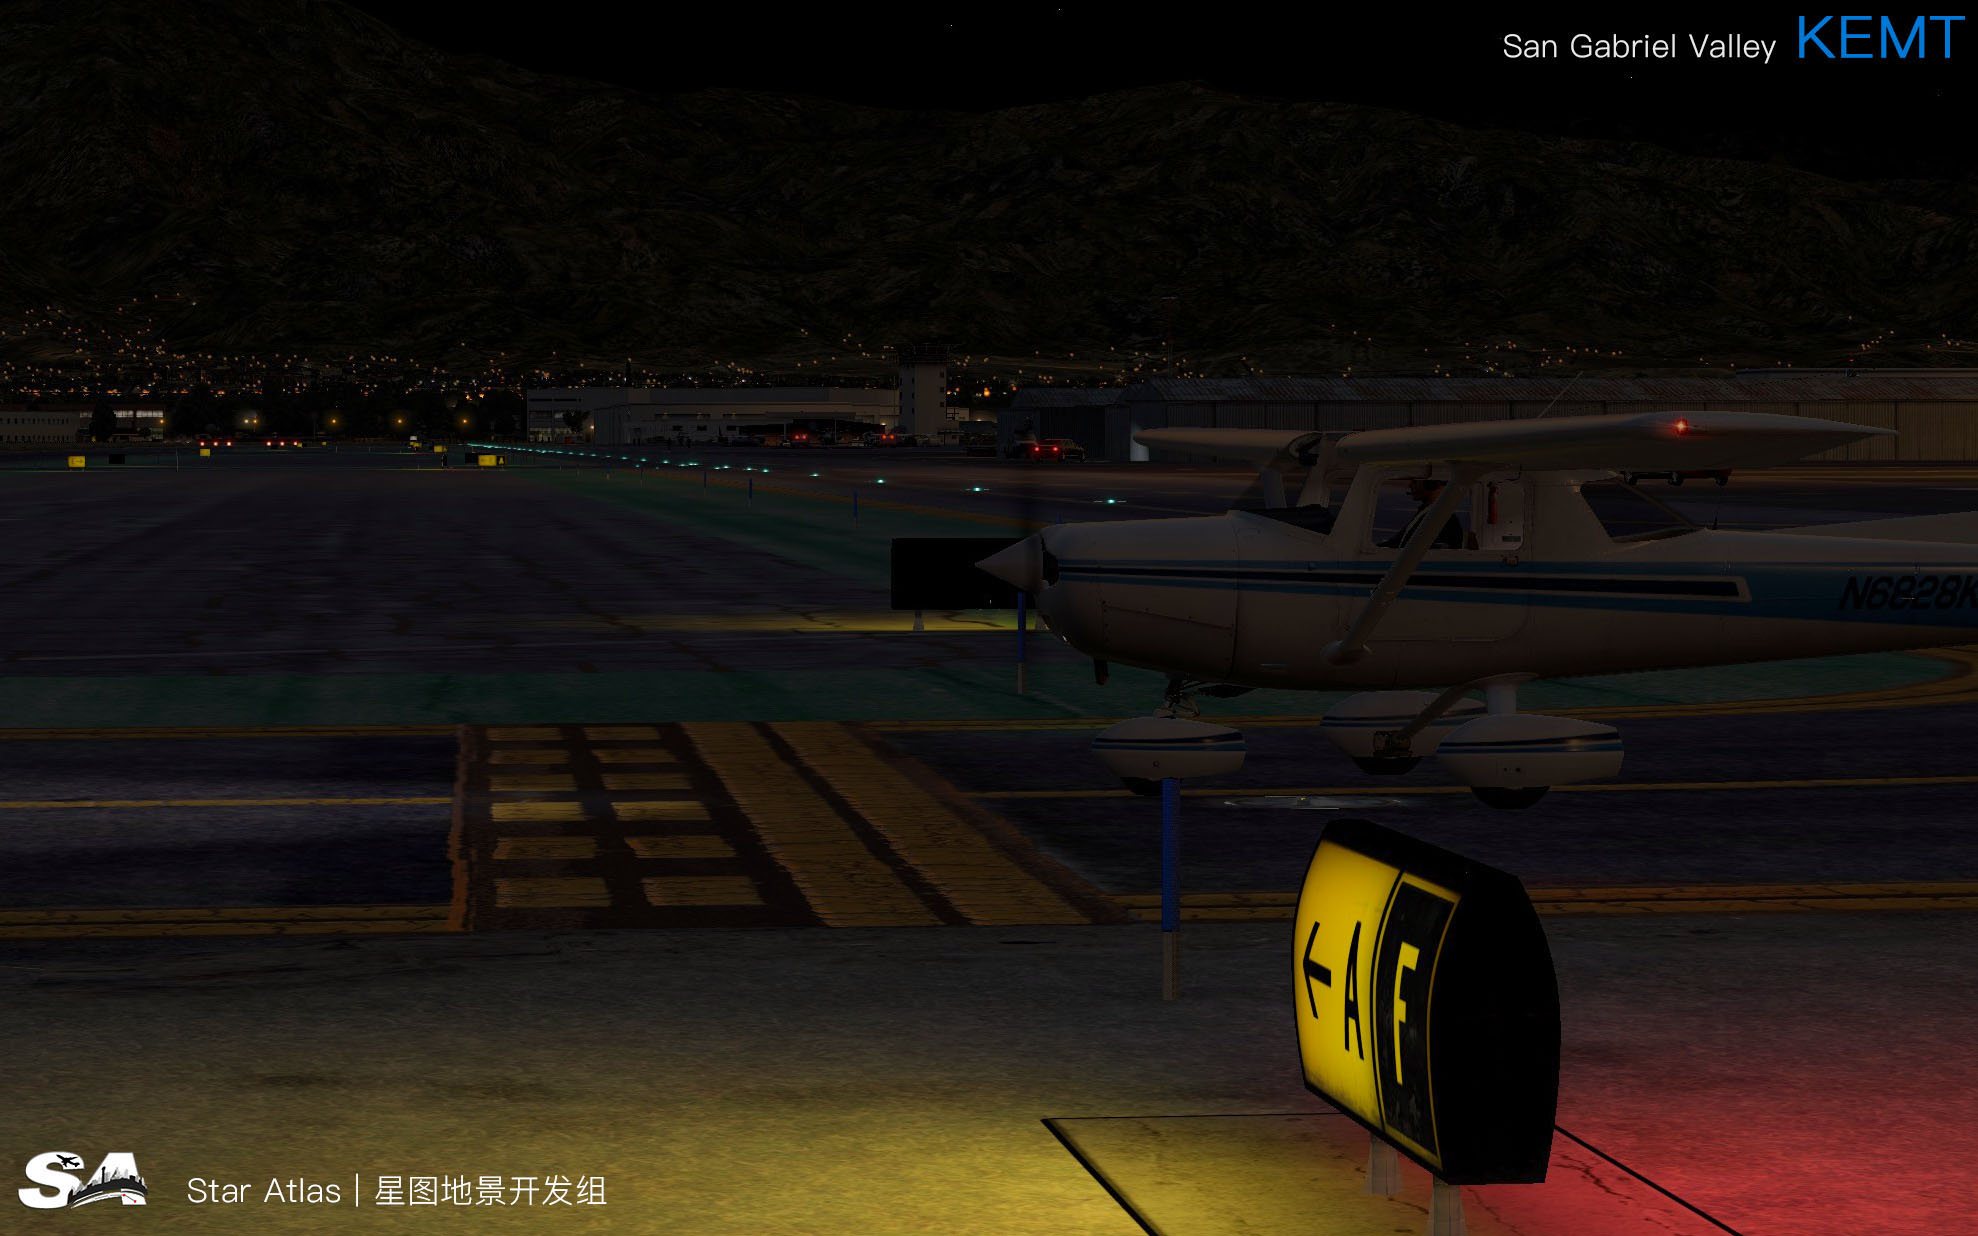 【X-Plane】KEMT-圣盖博谷机场 HD 1.0-3090 